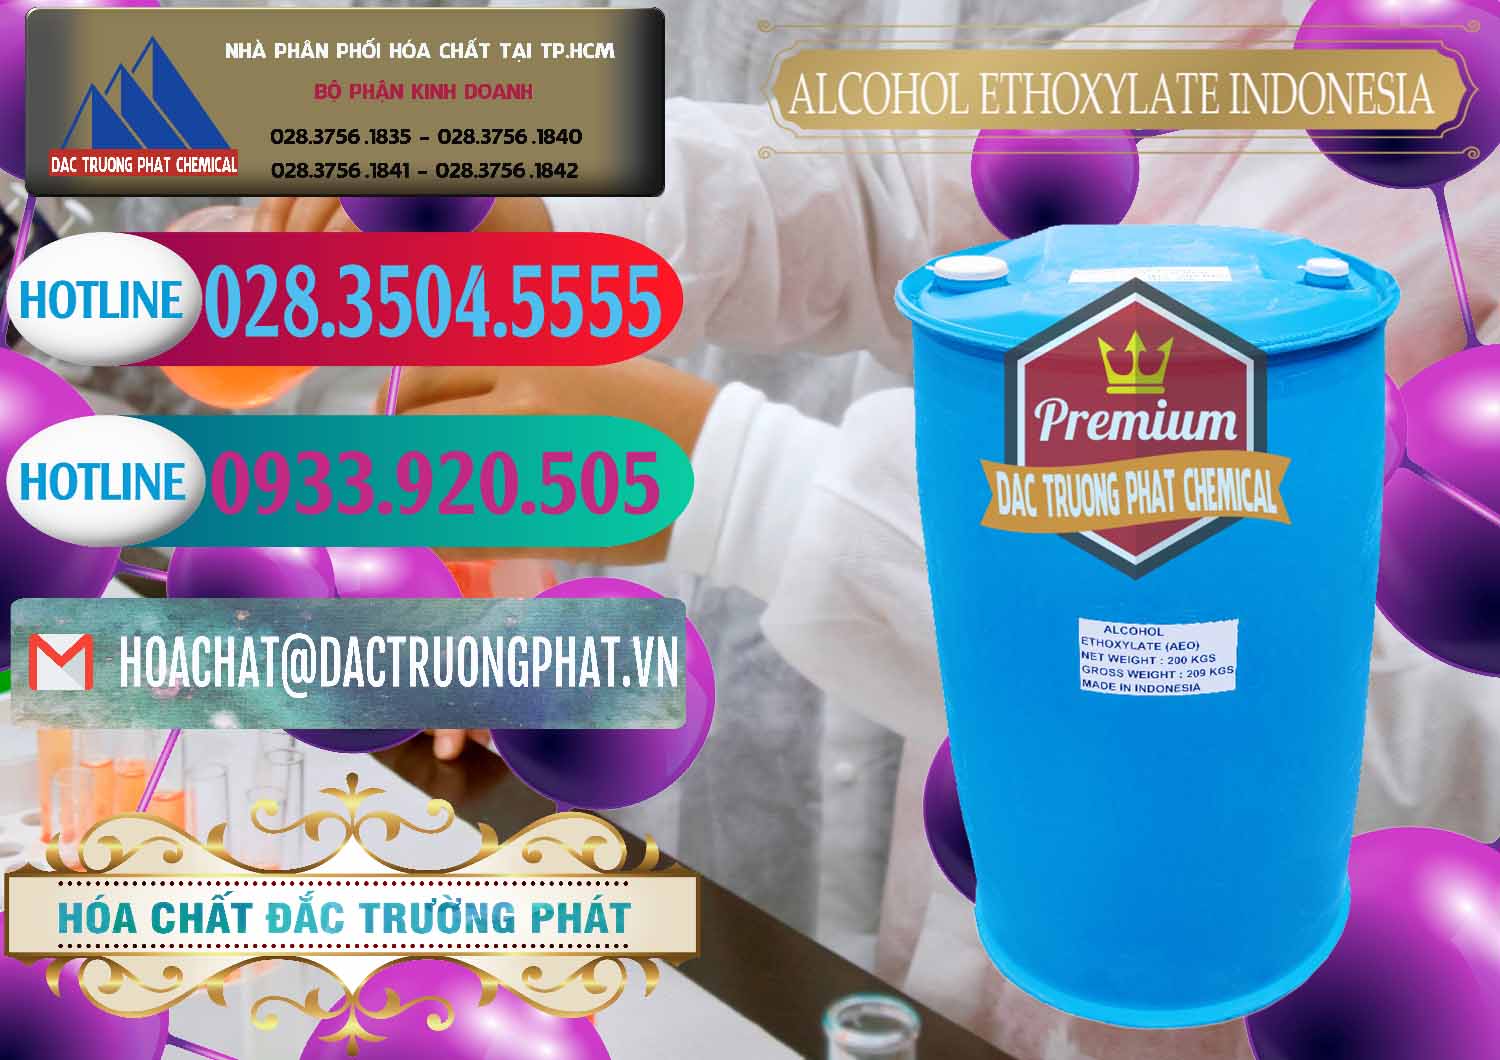 Công ty kinh doanh và bán Alcohol Ethoxylate Indonesia - 0308 - Nơi phân phối & cung cấp hóa chất tại TP.HCM - truongphat.vn